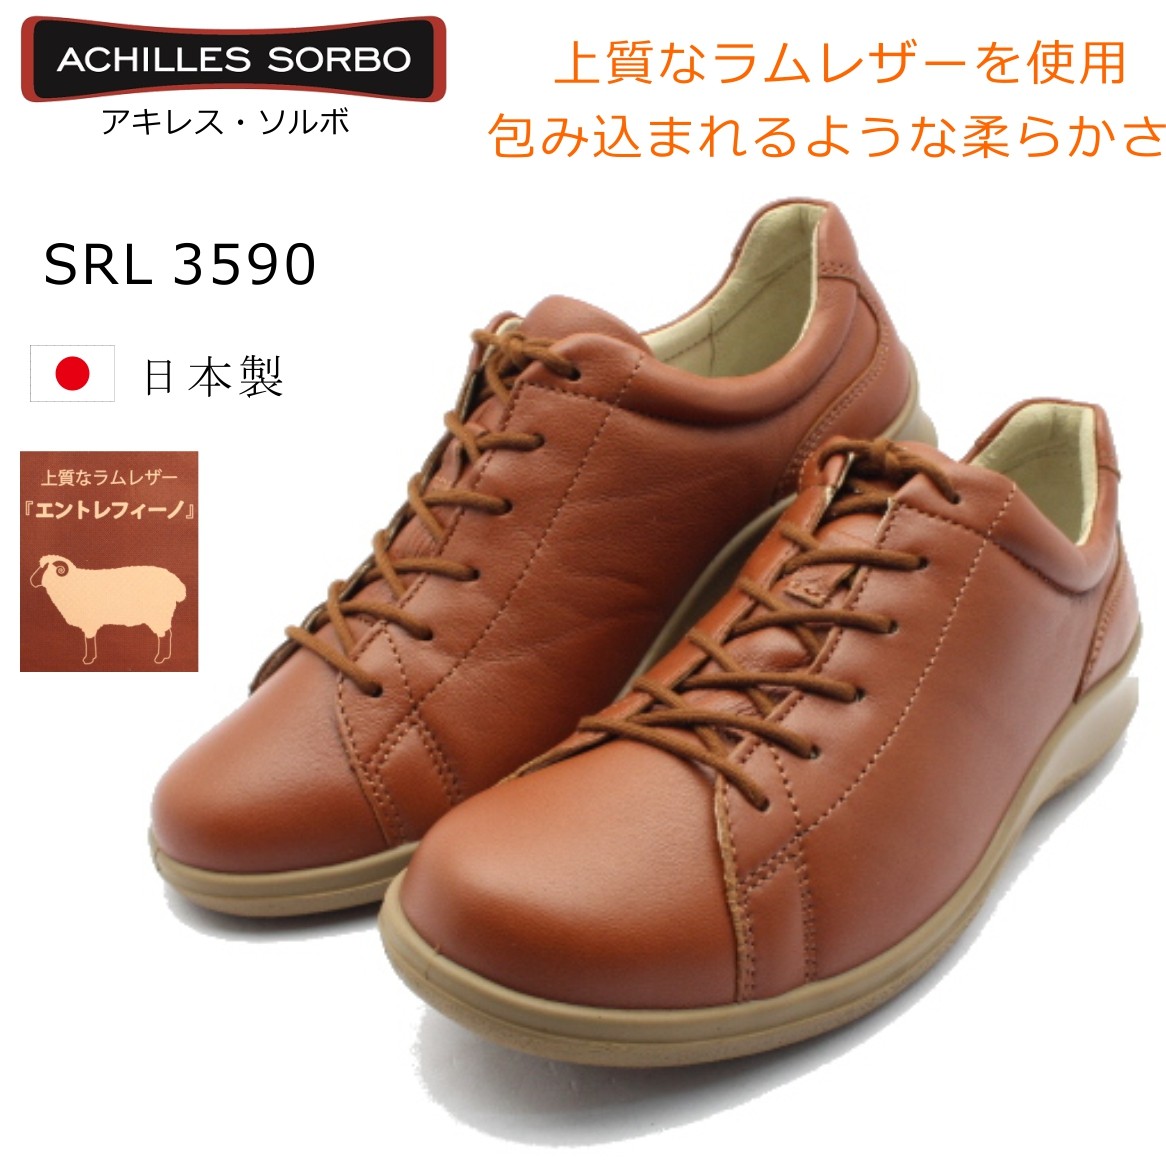 アキレス ソルボ レディース ウォーキングシューズ 羊皮 日本製 靴 SRL 3590 Achilles 359 SORBO 婦人 ブラウン